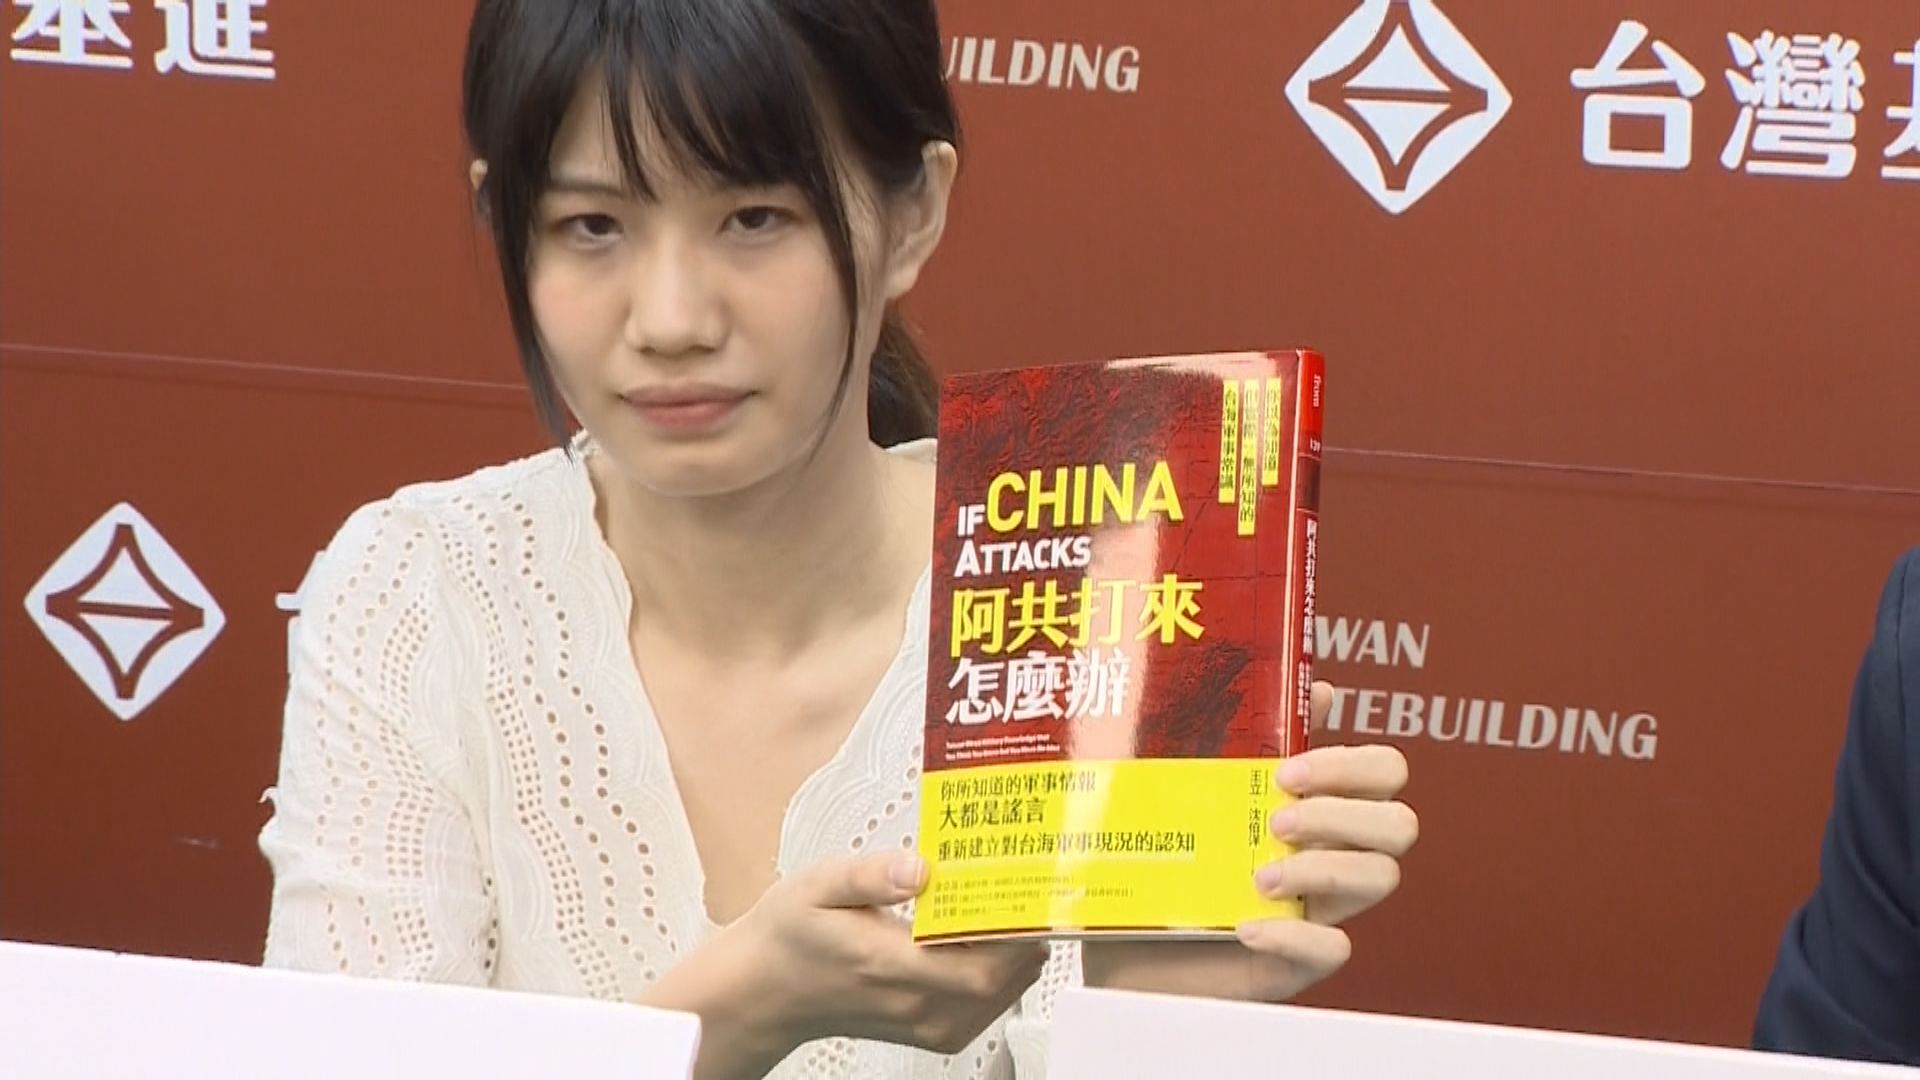 台灣有人買台海軍事議題書籍後稱接疑大陸來電